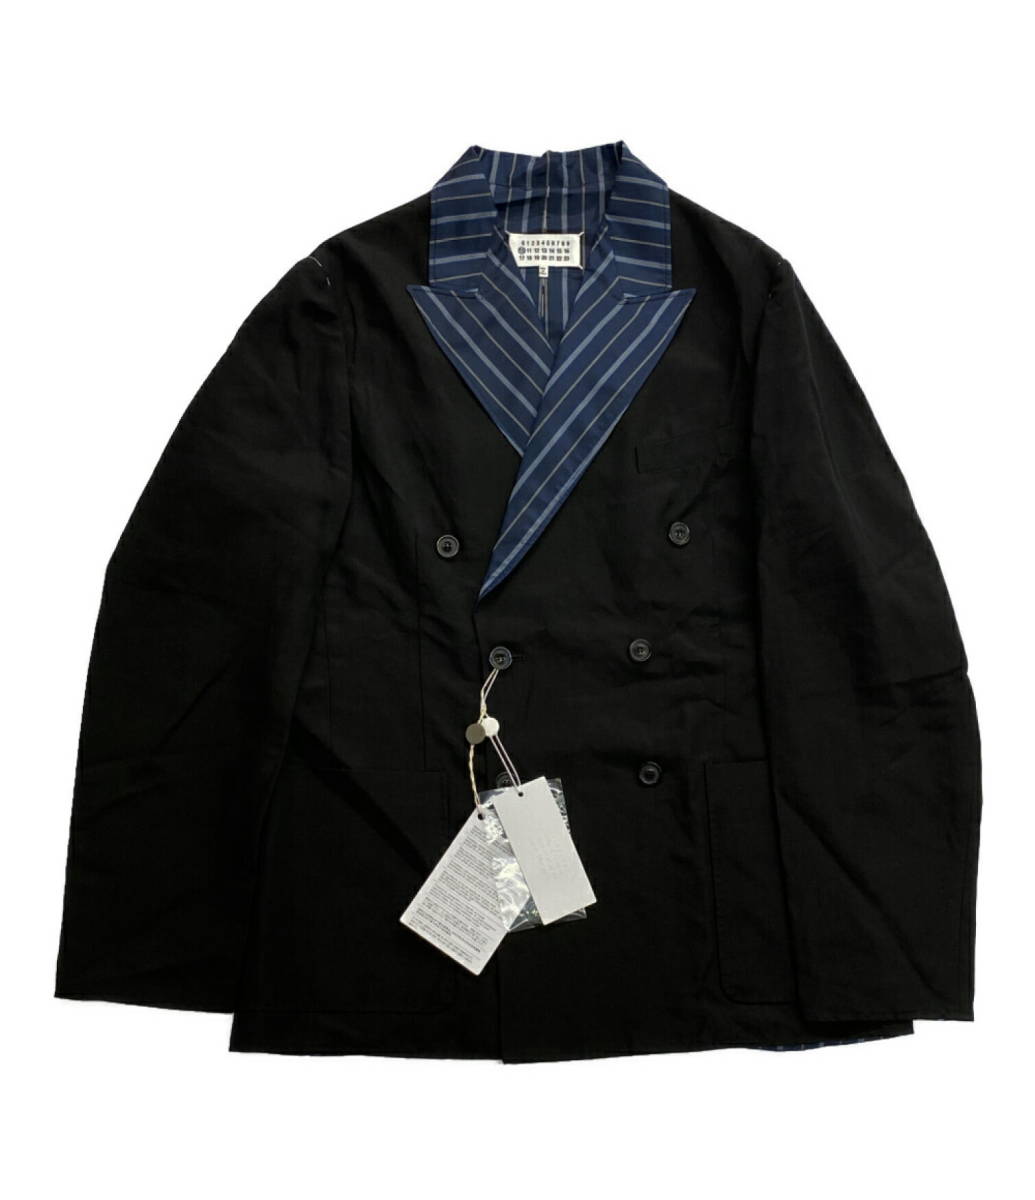 22SS Maison Margiela 10 Black Double Breasted Blazer ジャケット 46 ブラック ダブルブレザー メゾン マルジェラ 店舗受取可